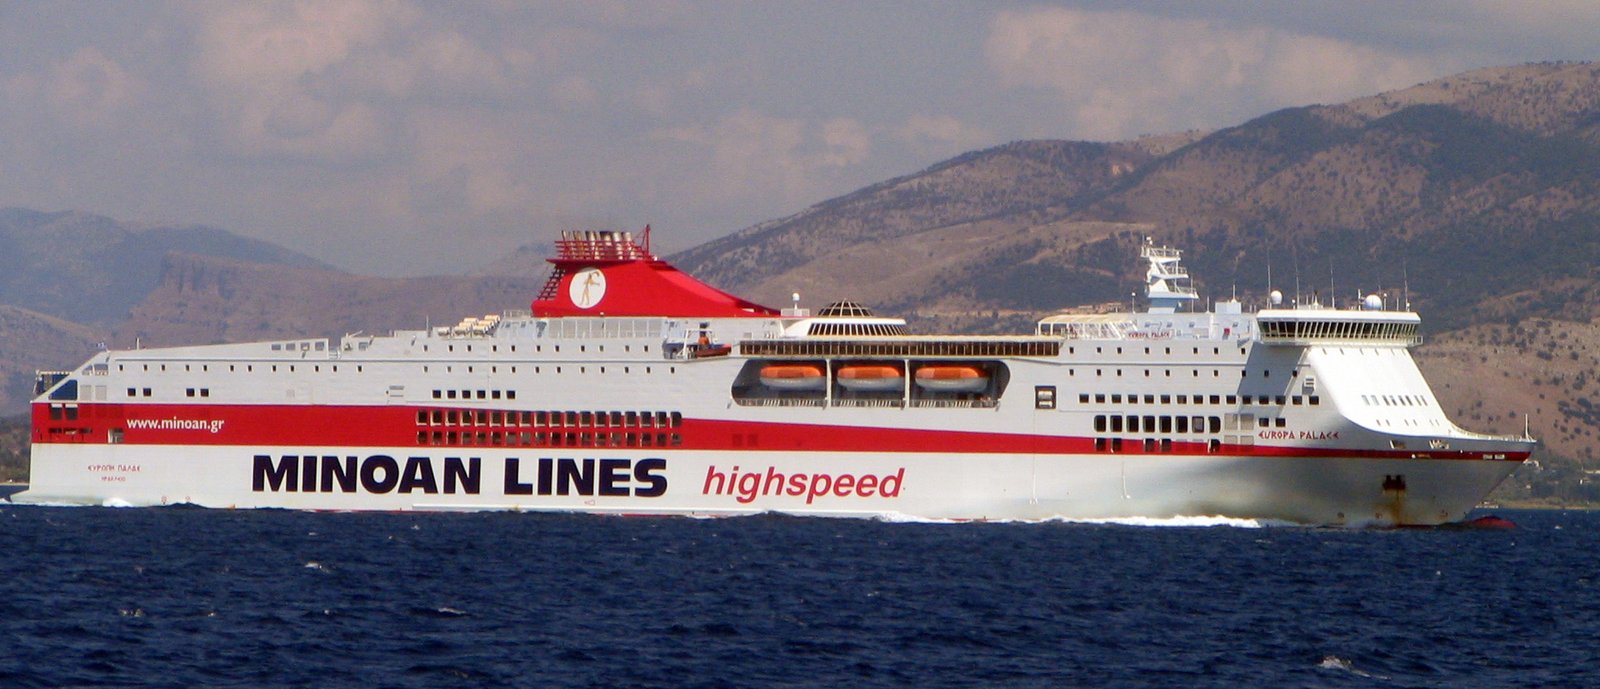 L'Amsicora en mer, en août 2006, lorsqu'il s'appelait encore Europa Palace et naviguait sous les couleurs de Minoan Lines ; photo : Bogdan Giuşcă (visible sur Wikipedia)